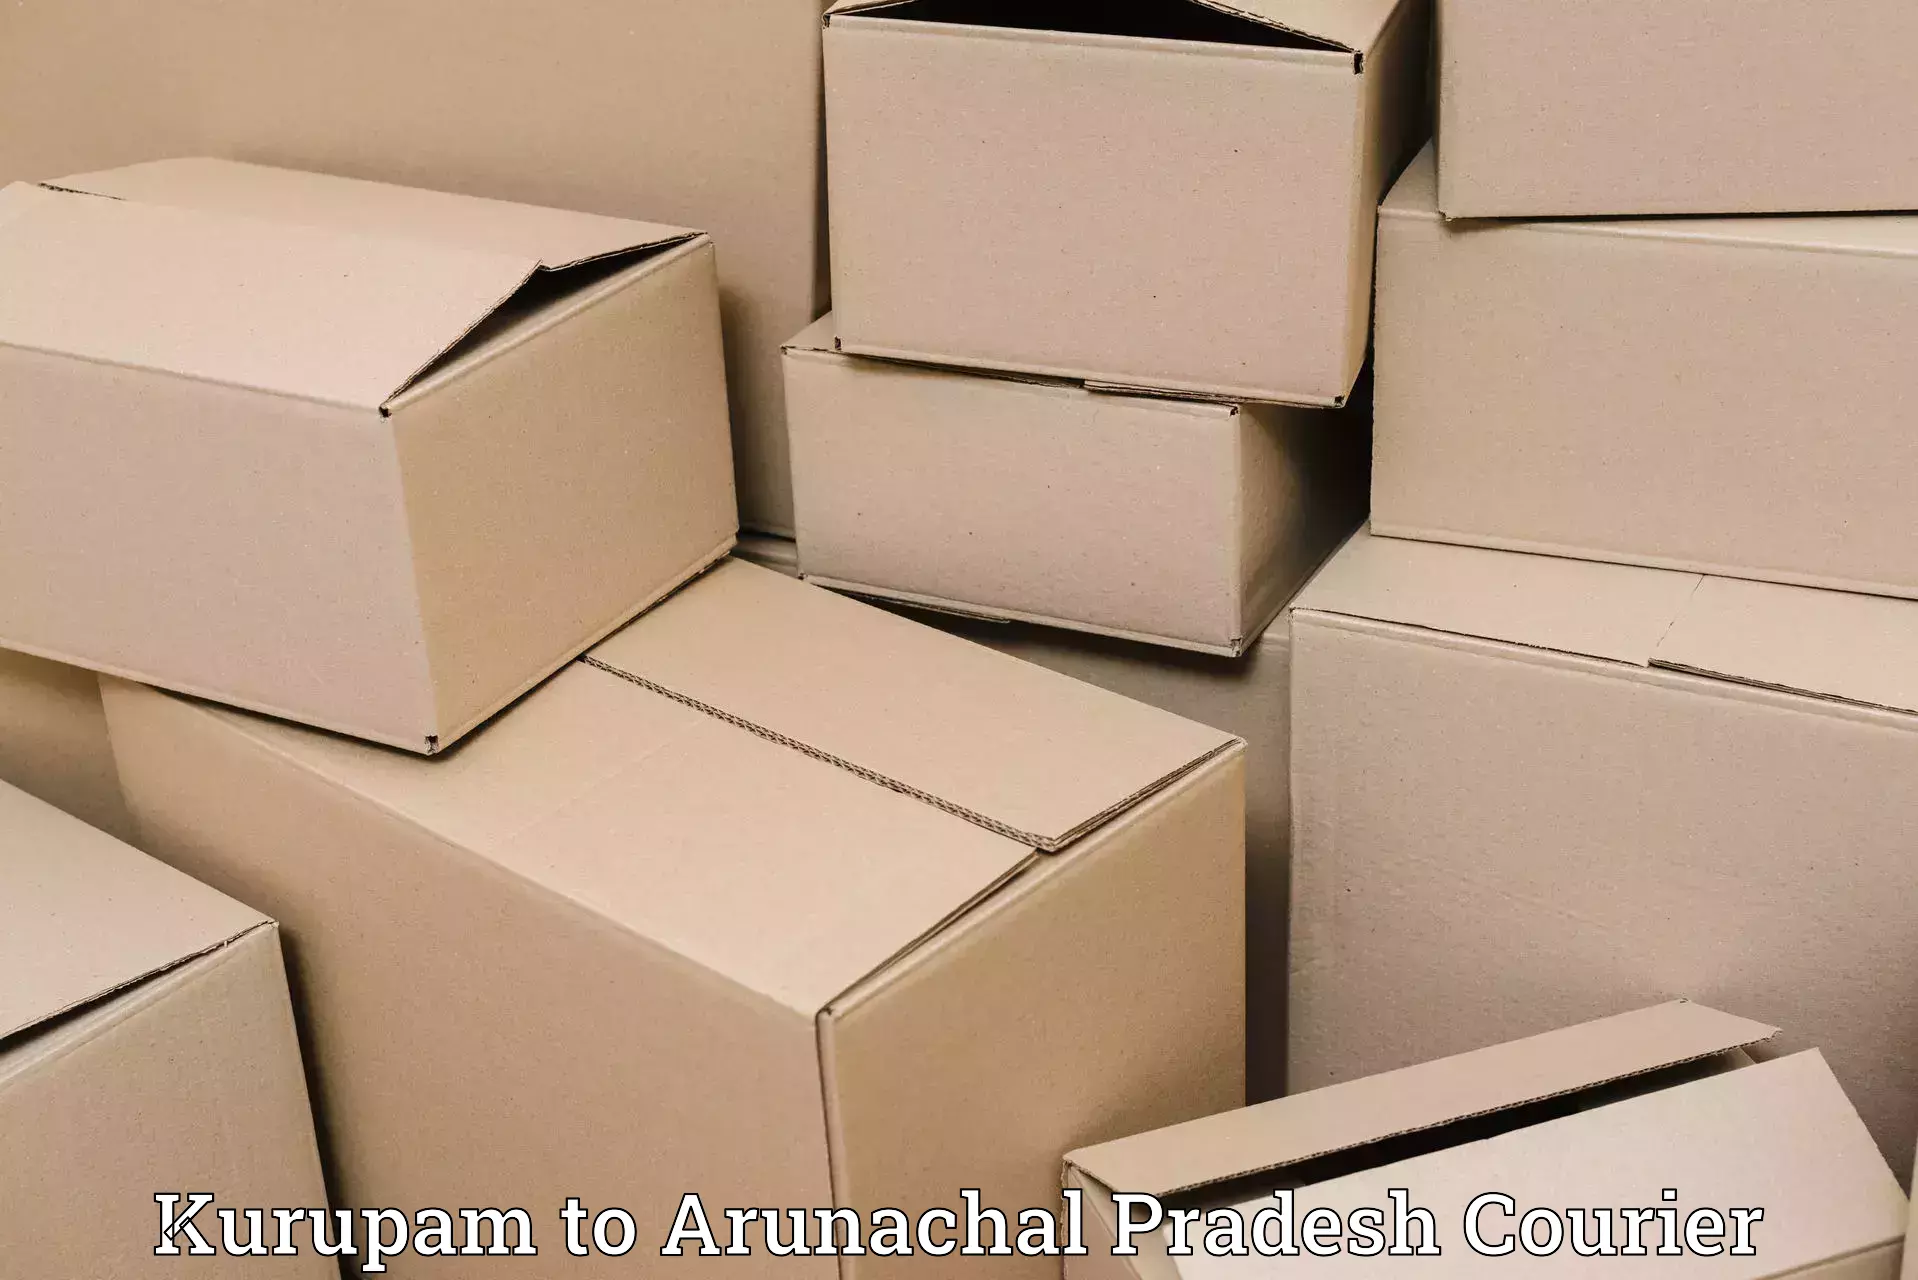 Global freight services Kurupam to Arunachal Pradesh